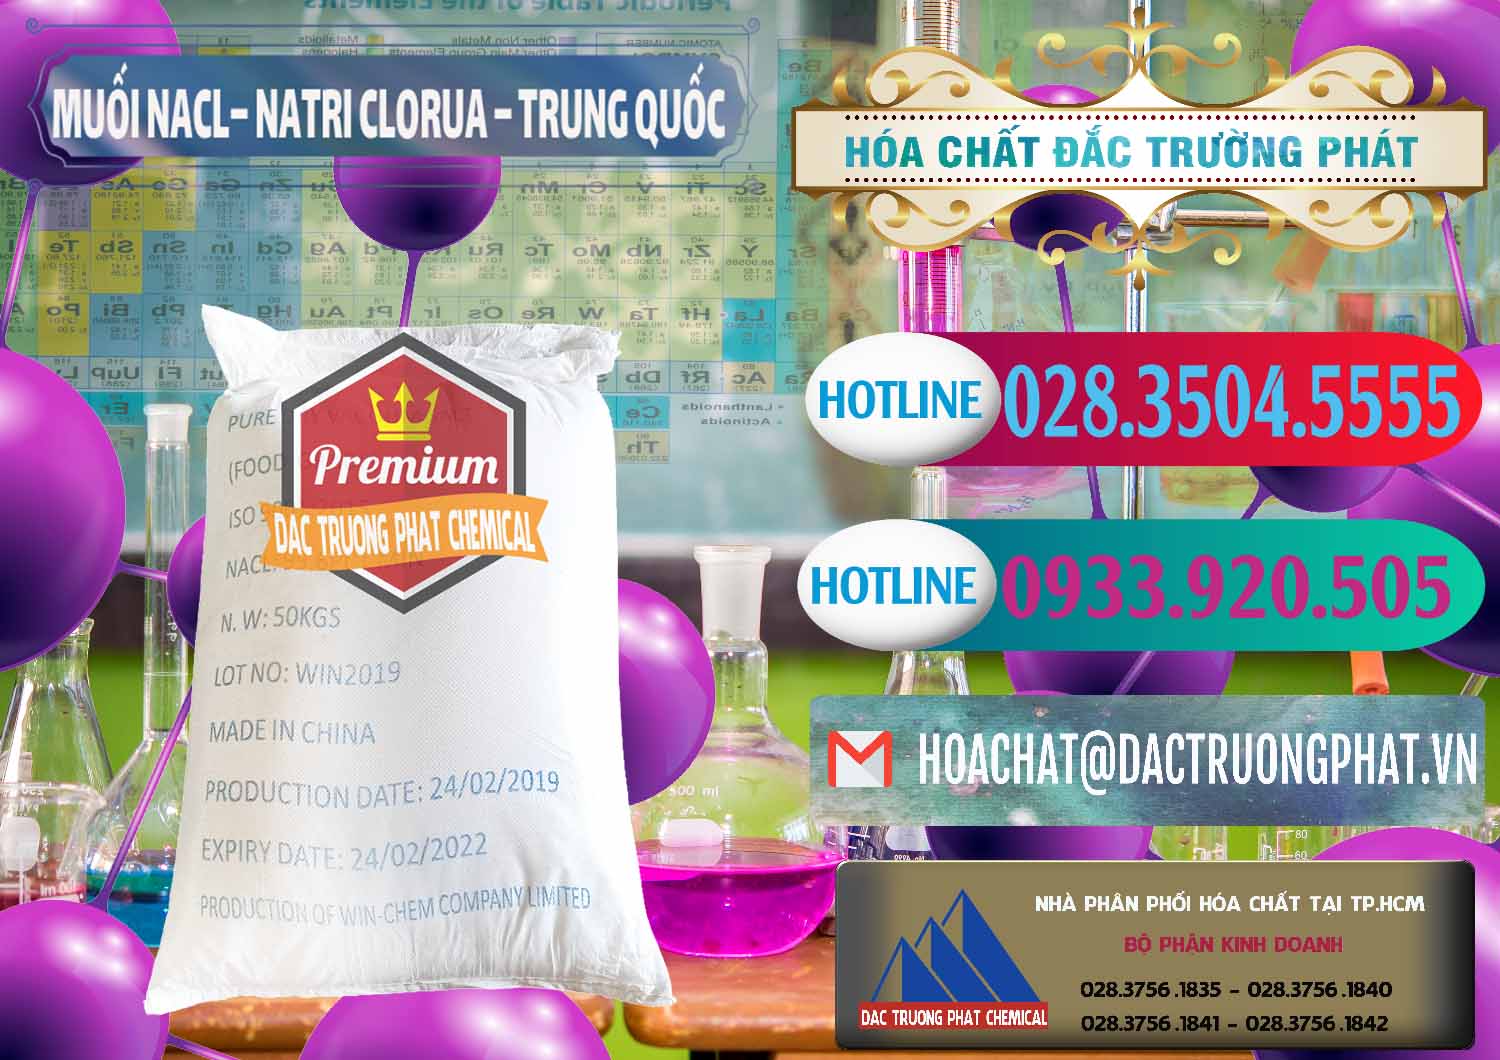 Đơn vị chuyên cung cấp và bán Muối NaCL – Sodium Chloride Trung Quốc China - 0097 - Công ty cung cấp & phân phối hóa chất tại TP.HCM - truongphat.vn